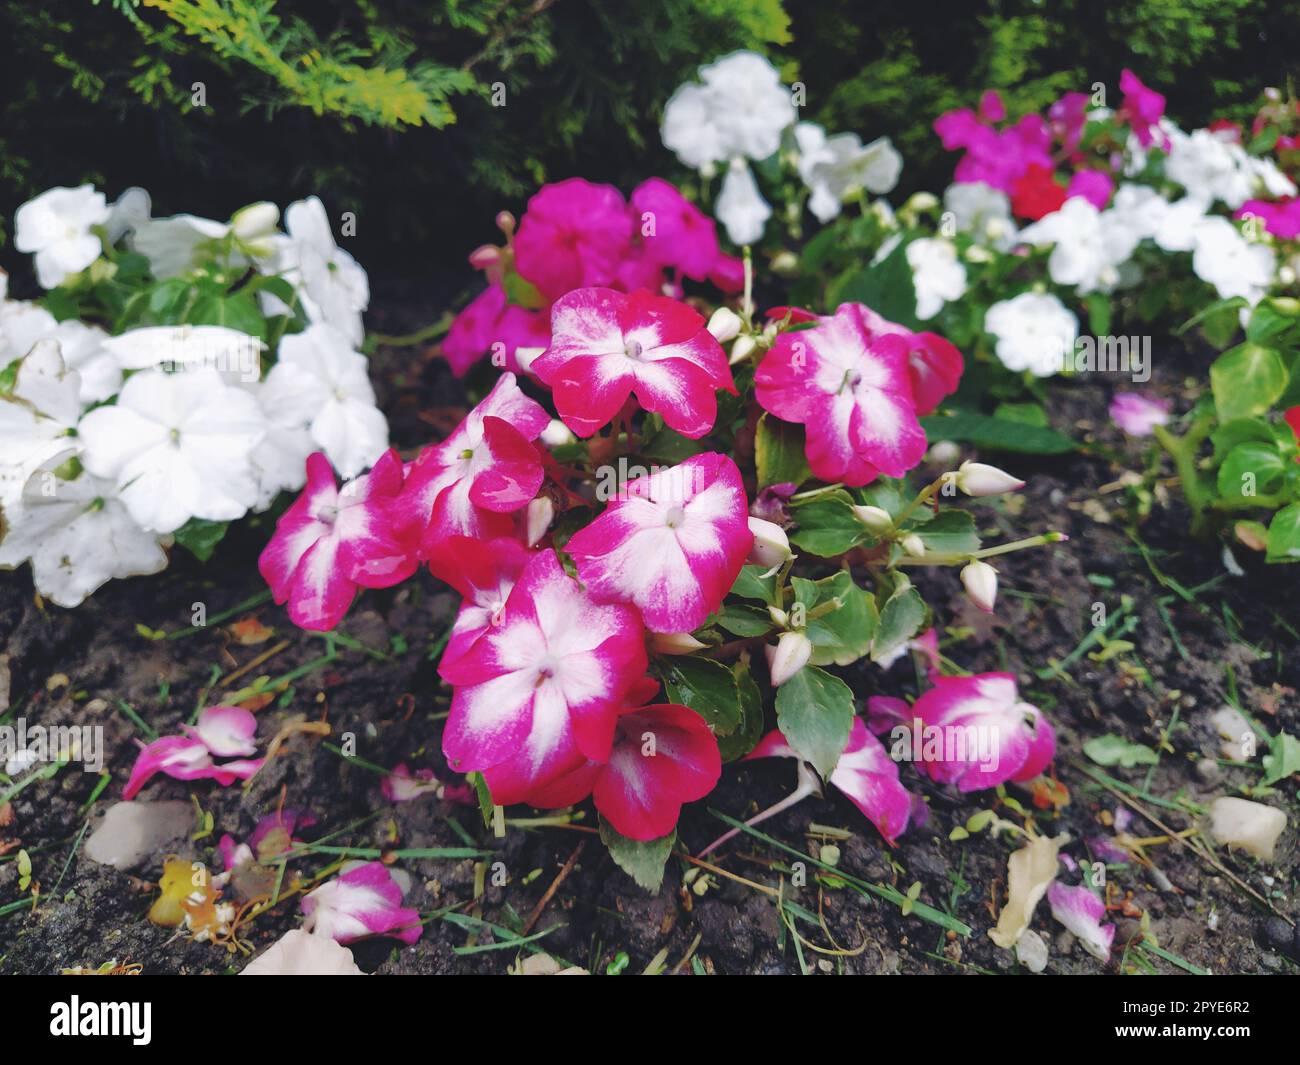 Petunia ist eine Gattung von Stauden- oder Strauchpflanzen der Familie der Solanaceae. Eine Ziersorte, die jährlich als Petunia hybrida oder Petunia Garden angebaut wird. Weiße und rosa gestreifte Blumen Stockfoto